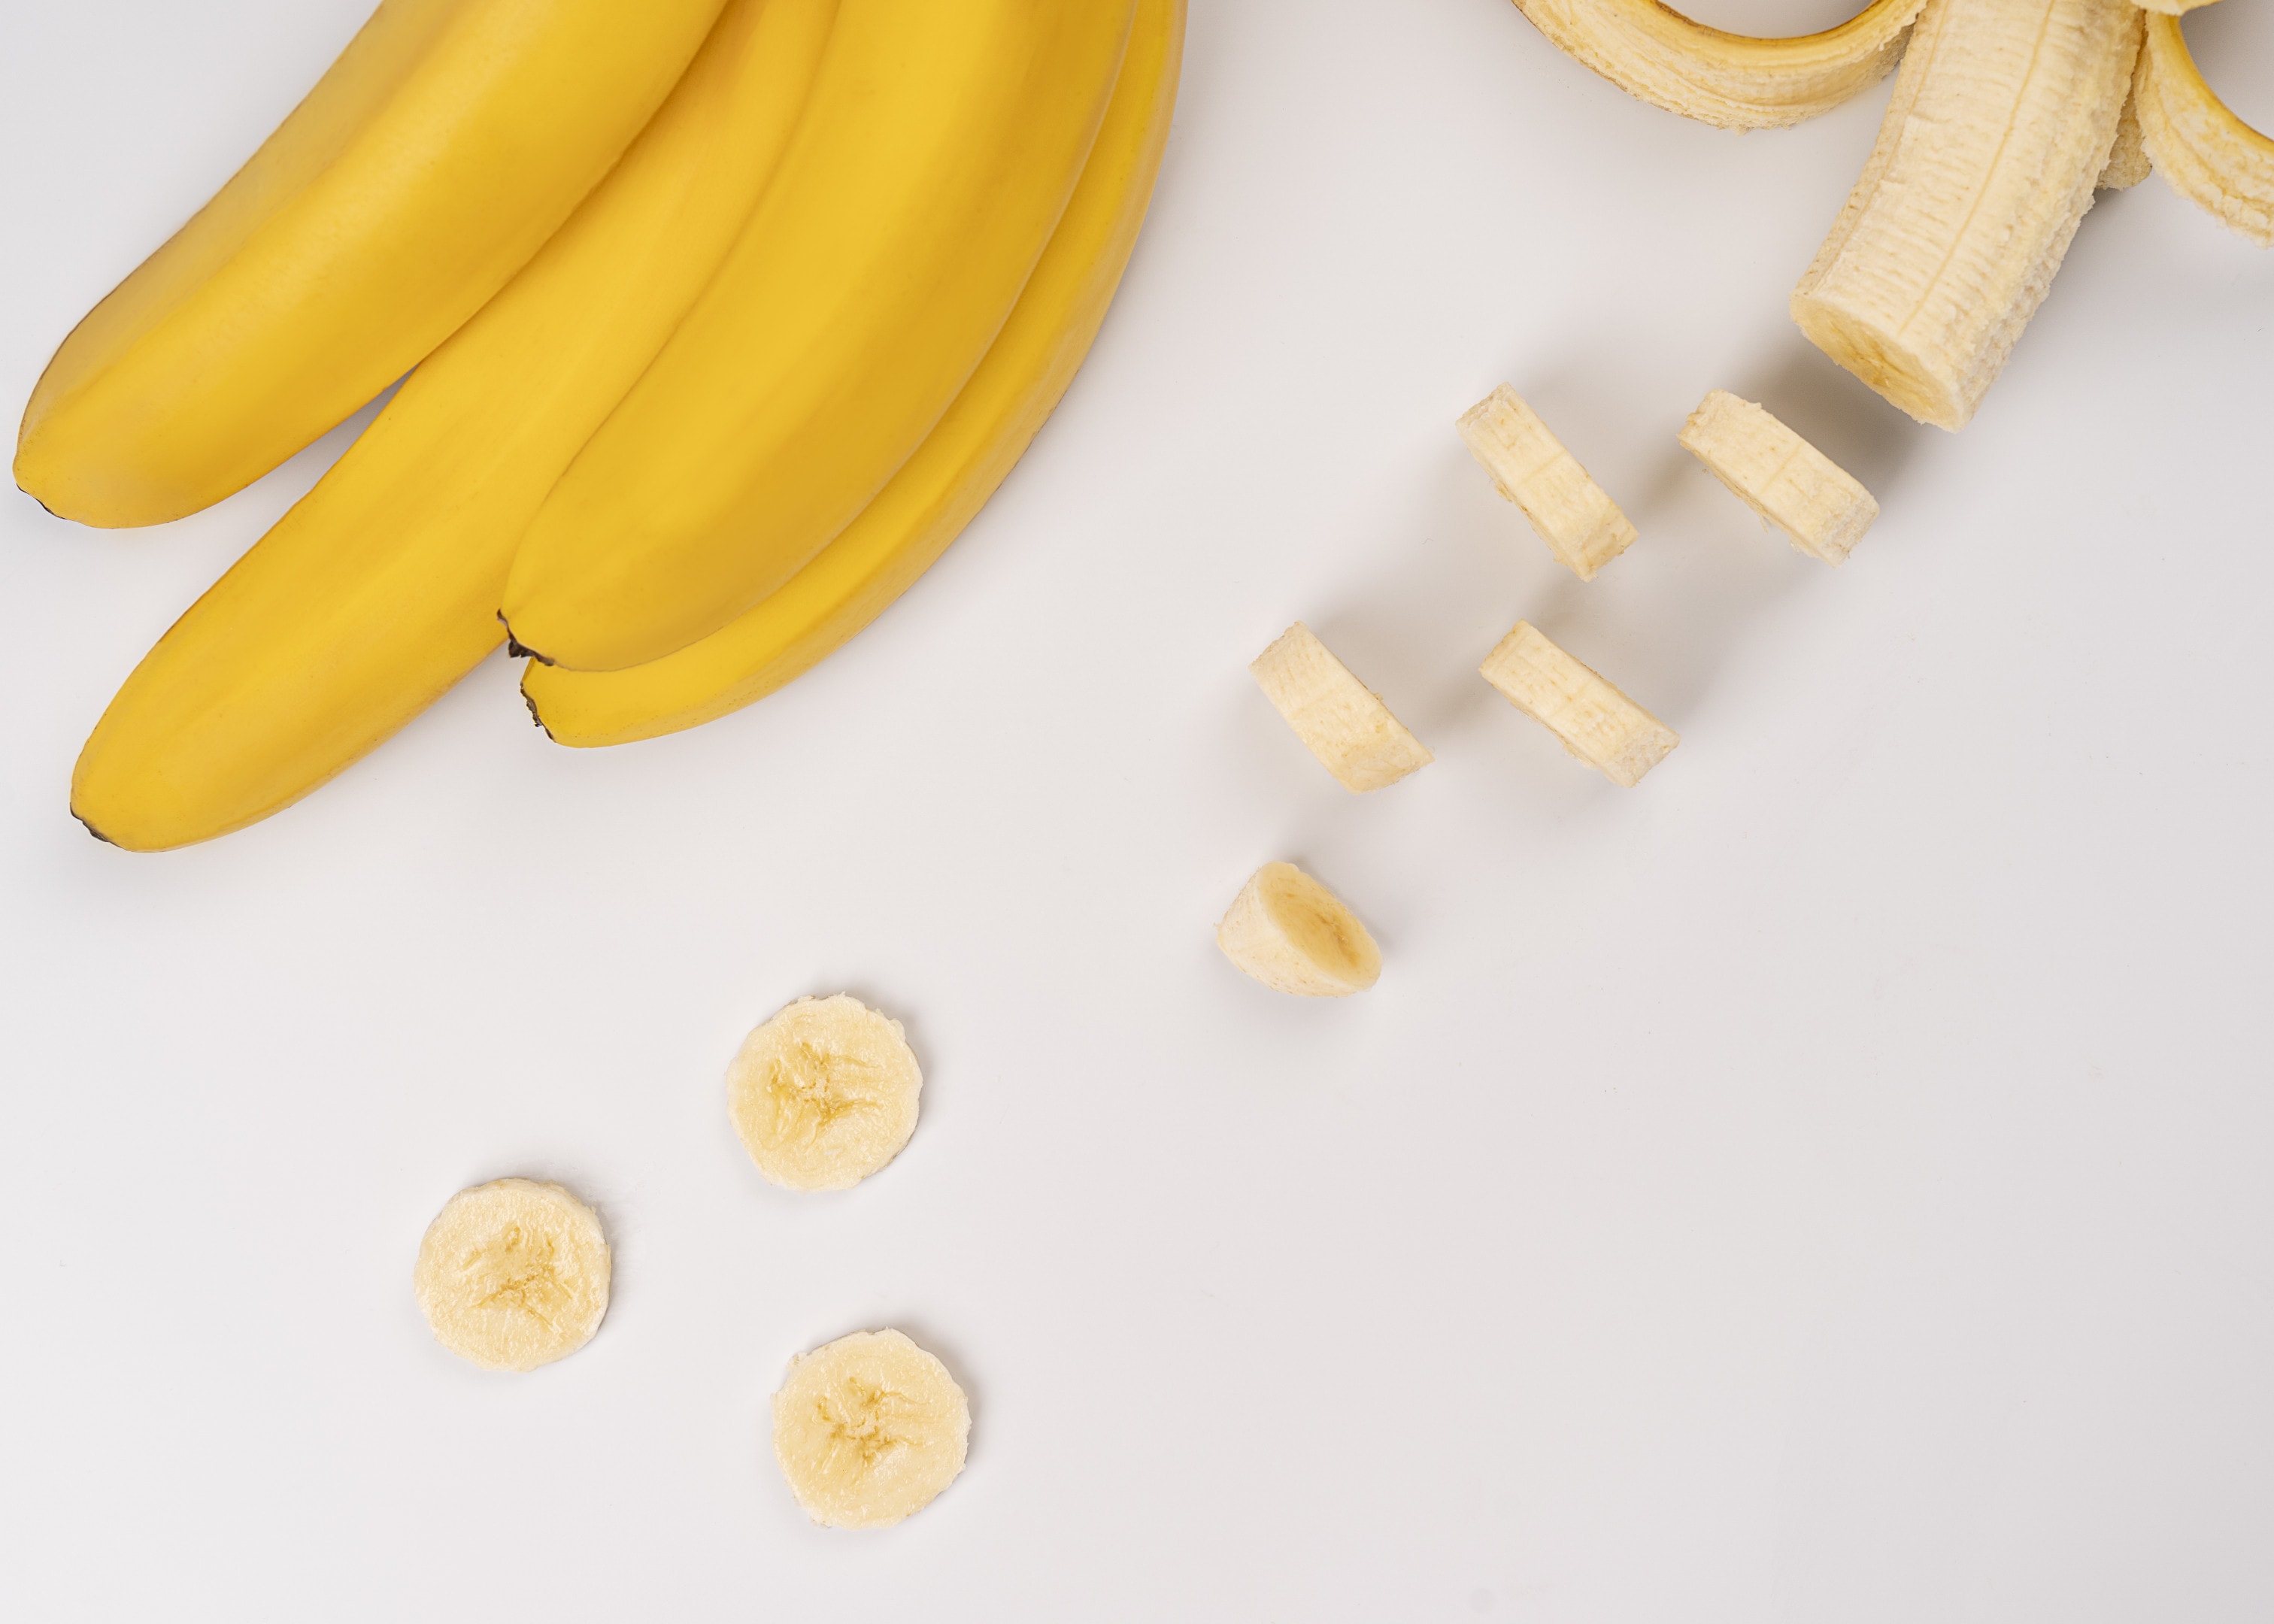 Bananas and banana slices on white table